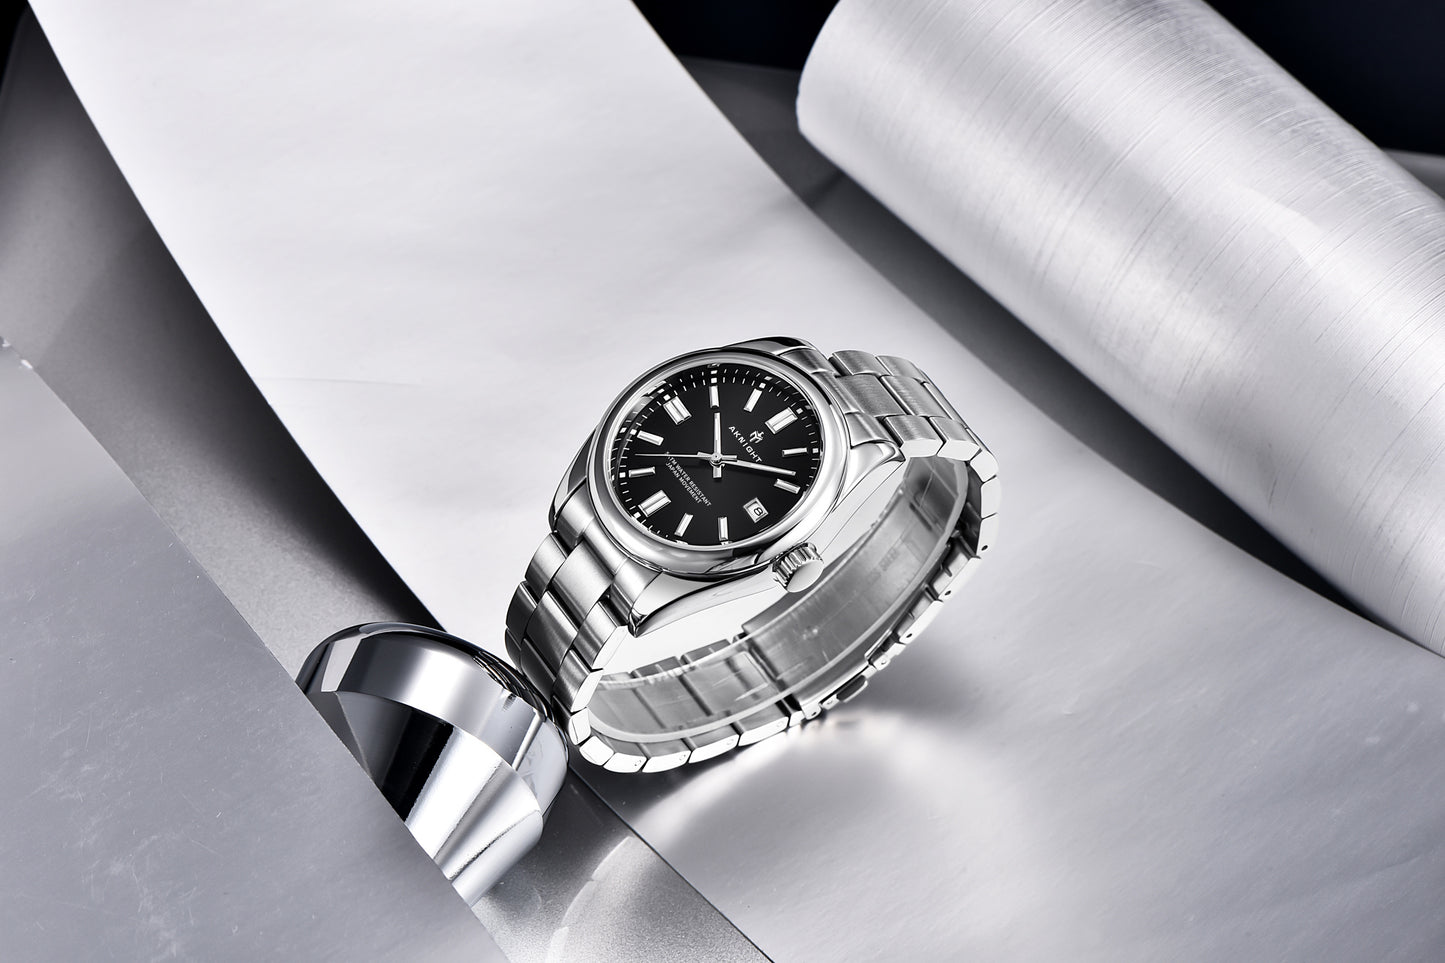 AKNIGHT™ Men's Stainless Steel Watch Date Waterproof 5ATM Fashion Simple Classic Men's Wrist Watch